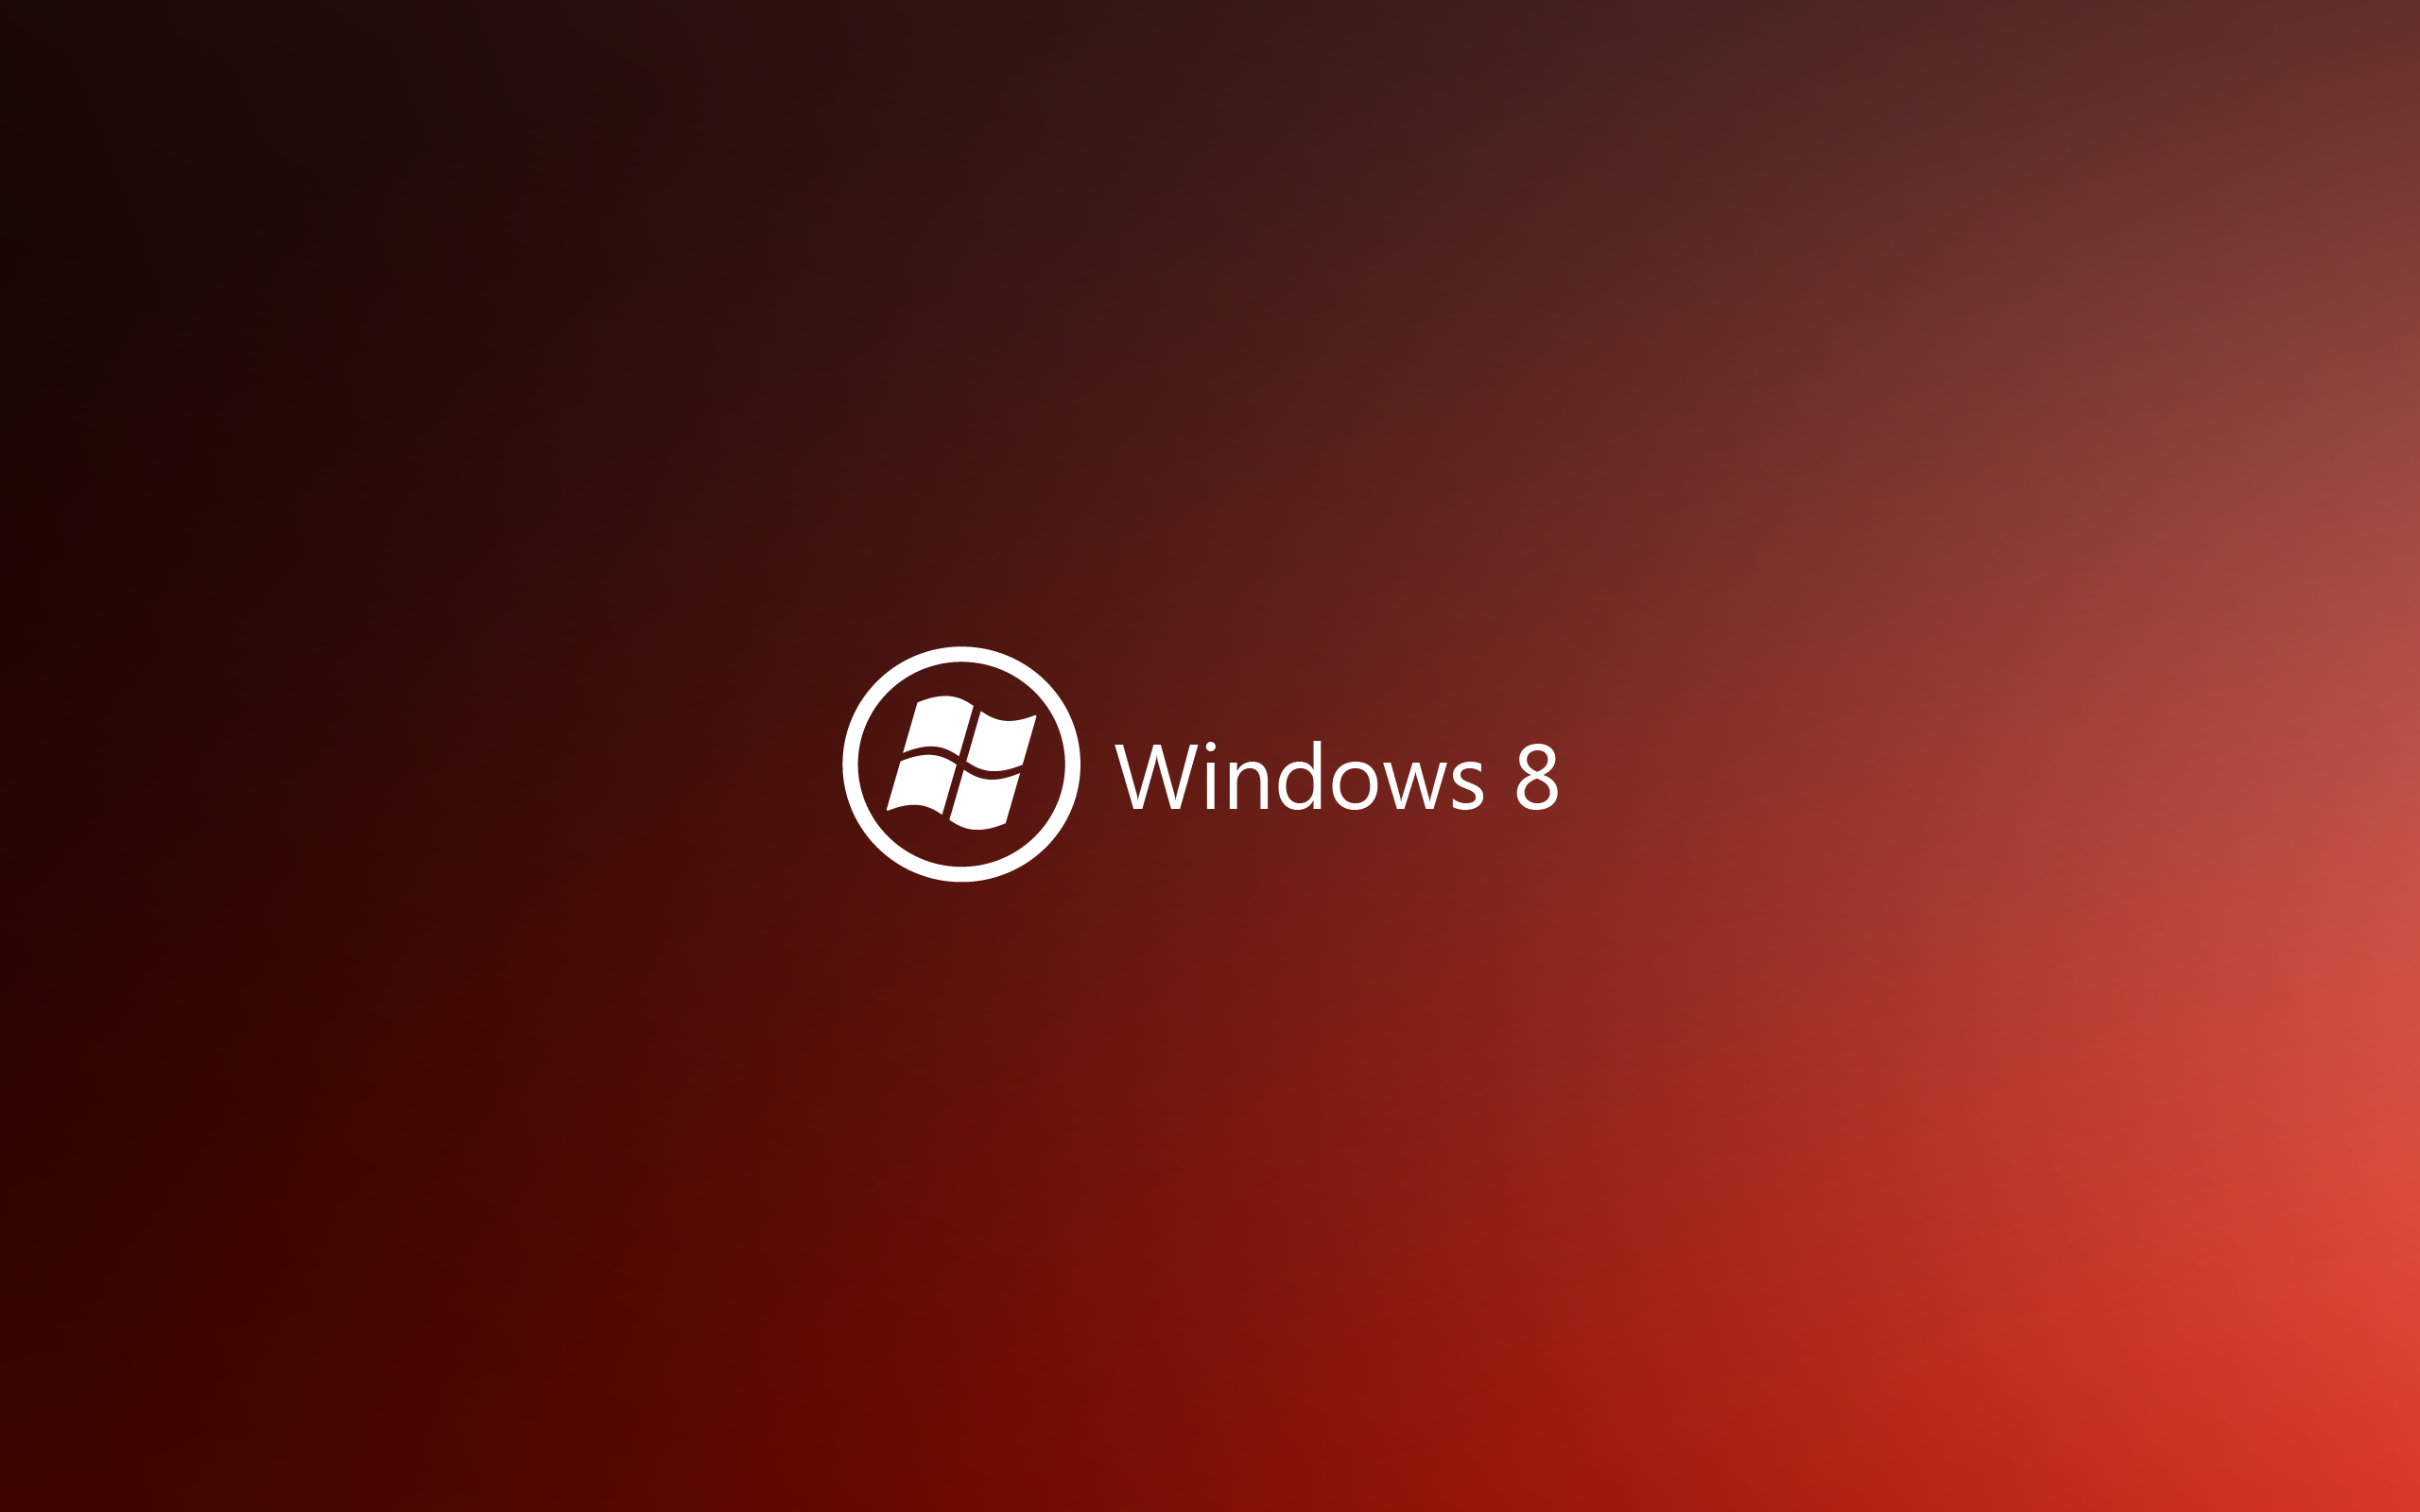 минималистичный, красный цвет, DeviantART, Windows 8 - обои на рабочий стол